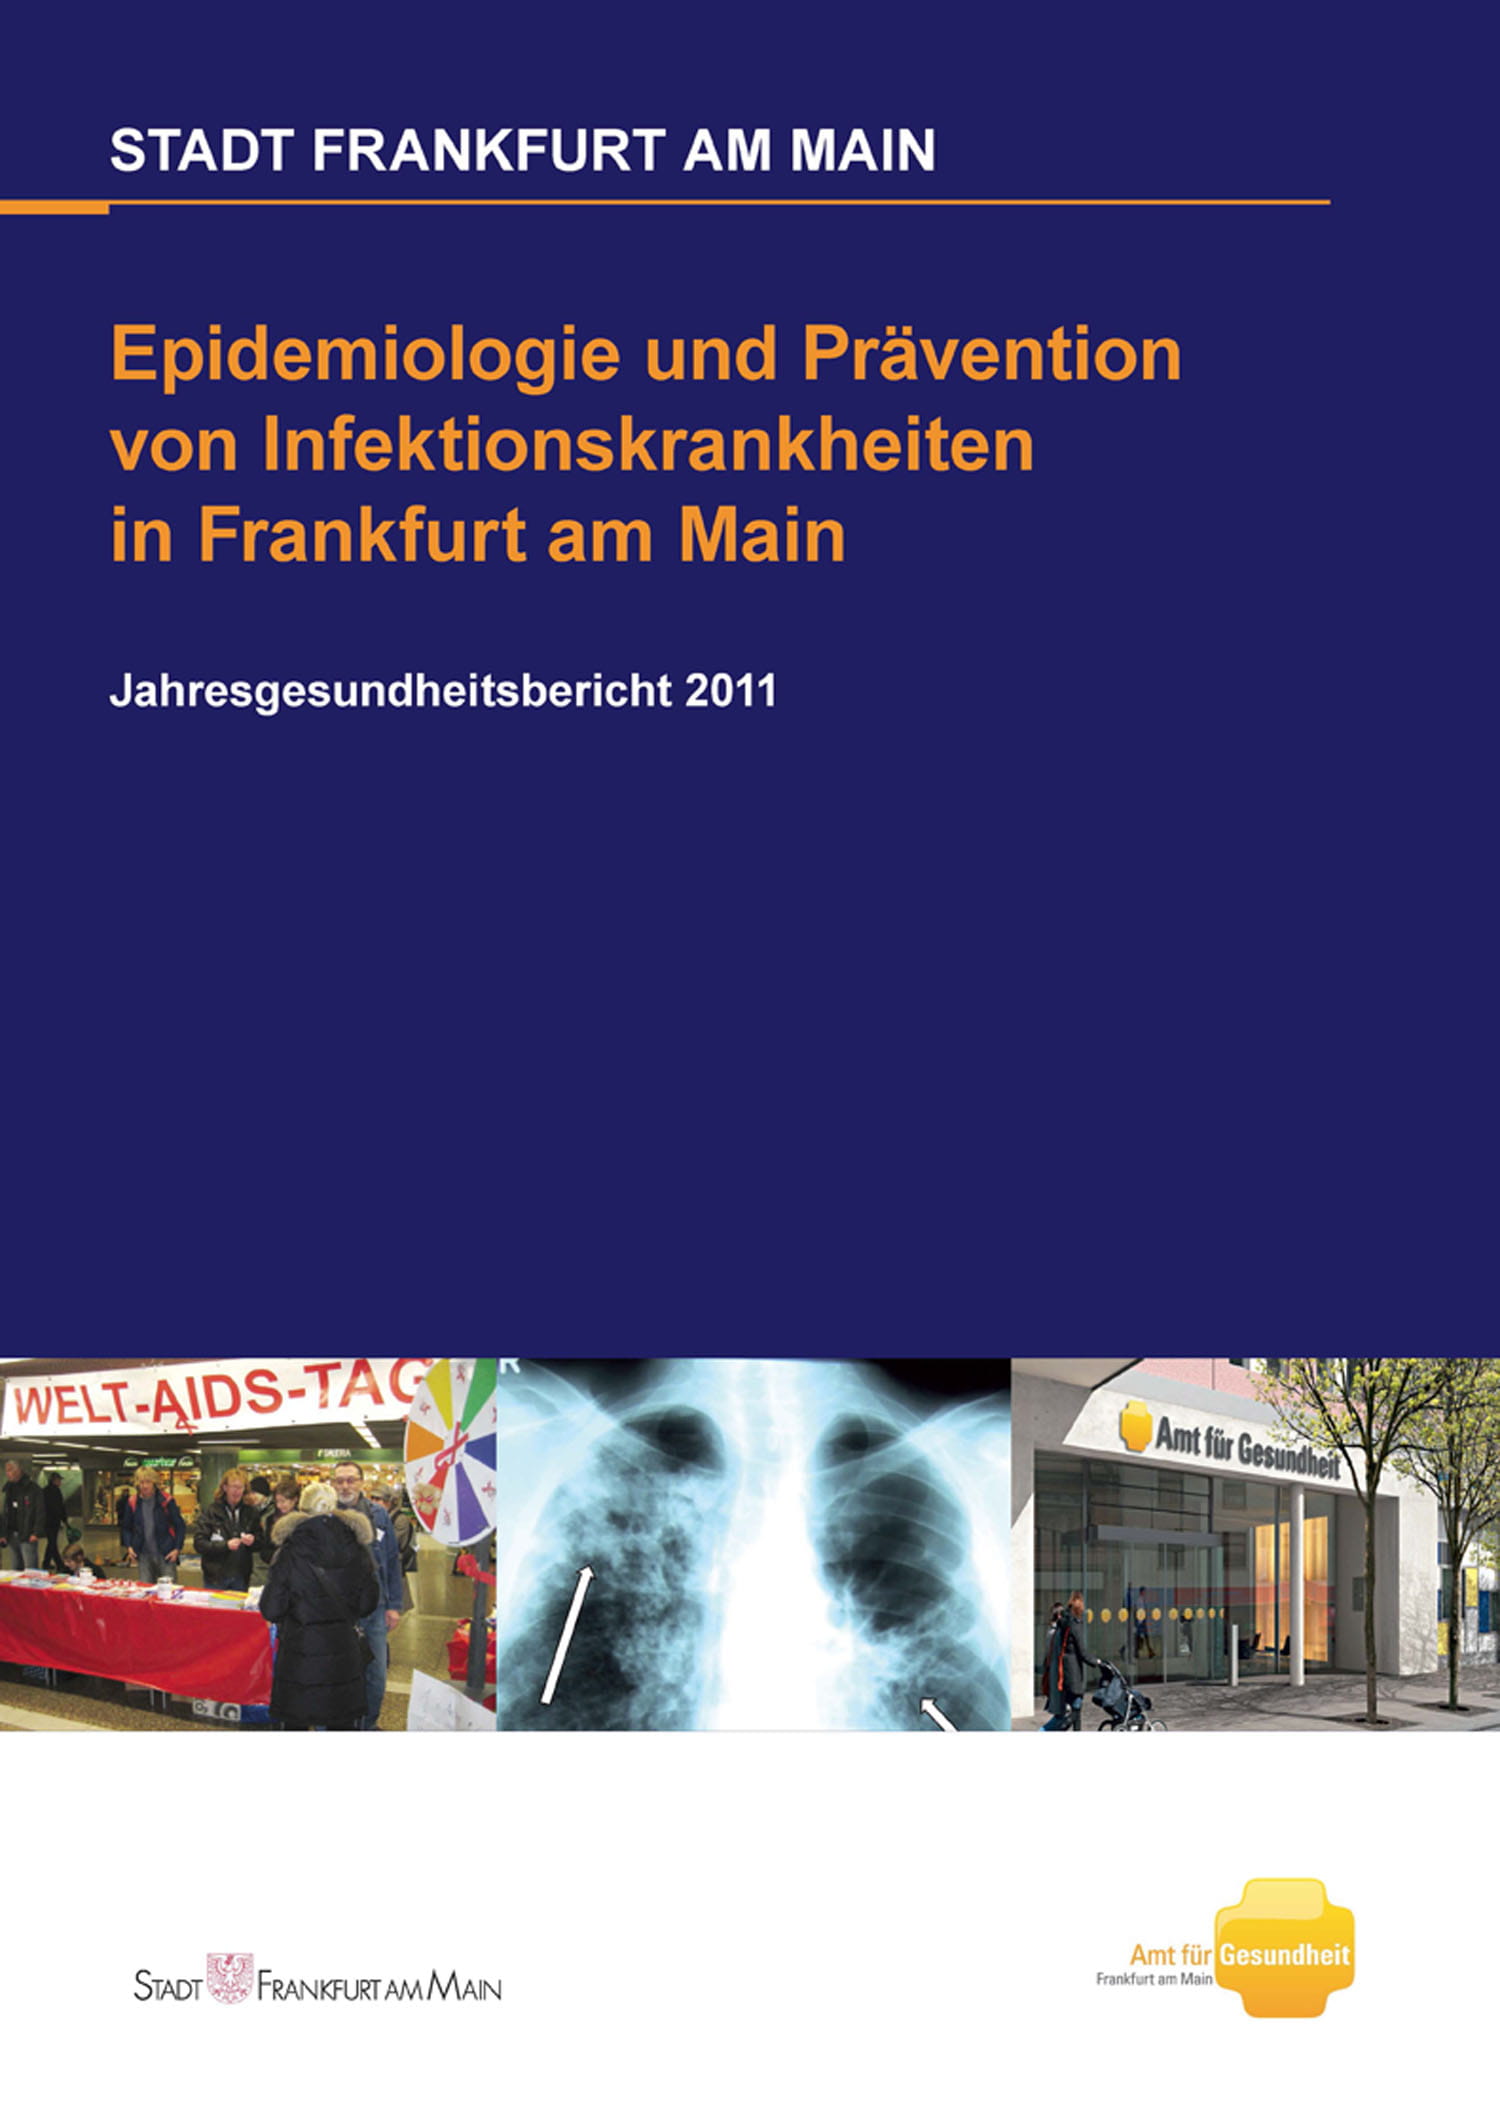 Titelseite des Jahresgesundheitsberichtes 2011, Epidemiologie und Prävention von Infektionskrankheiten in Frankfurt am Main